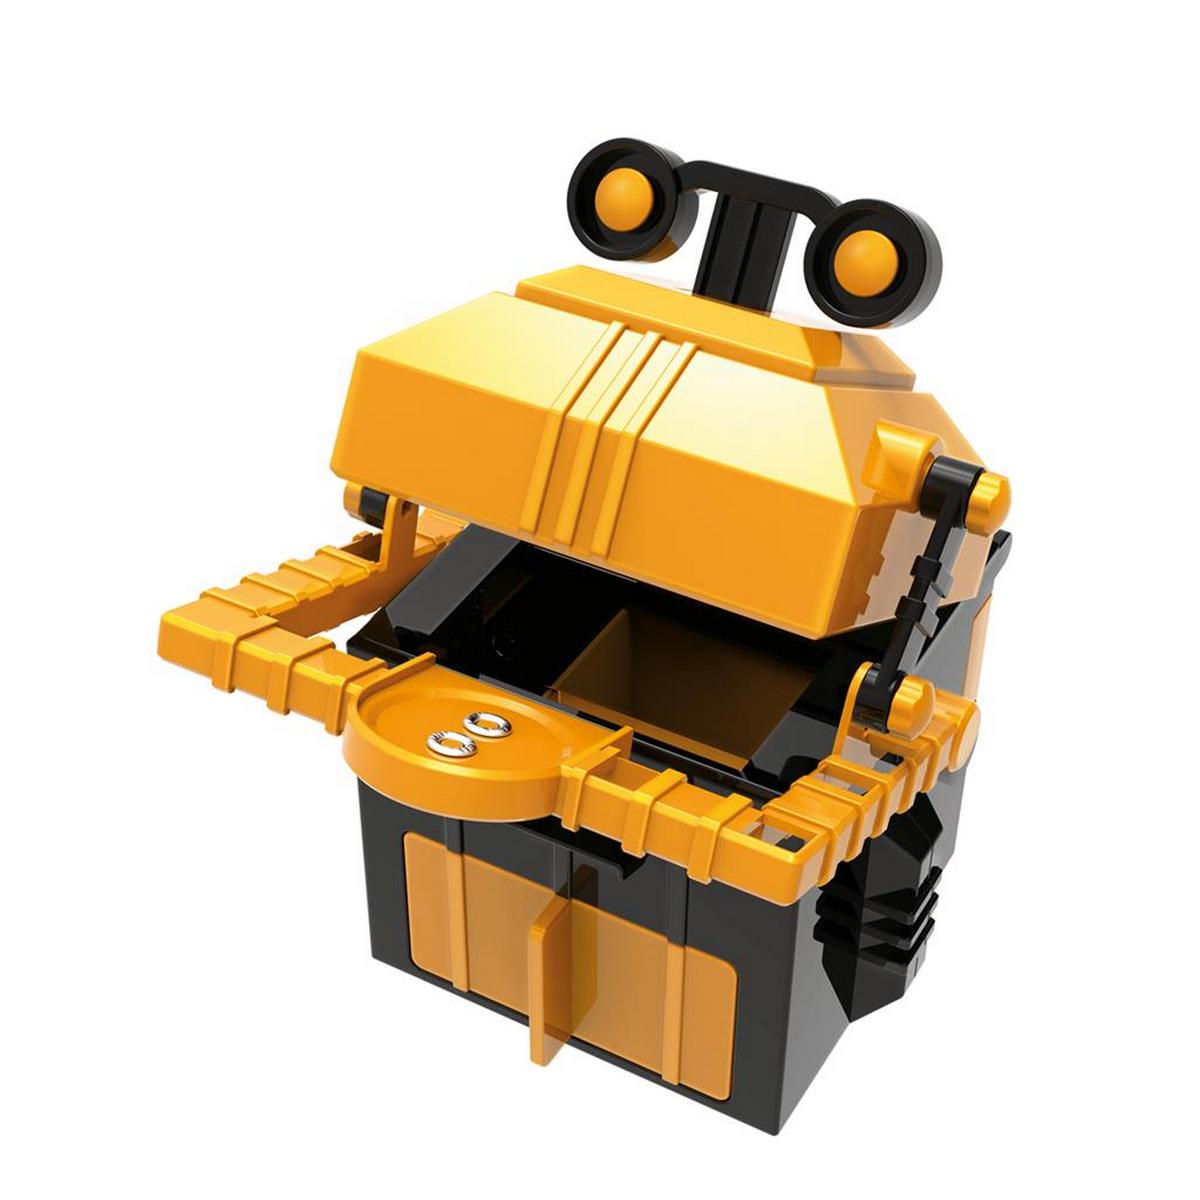 4M kidsrobotix robot tirelire une idee cadeau chez ugo et lea (2)